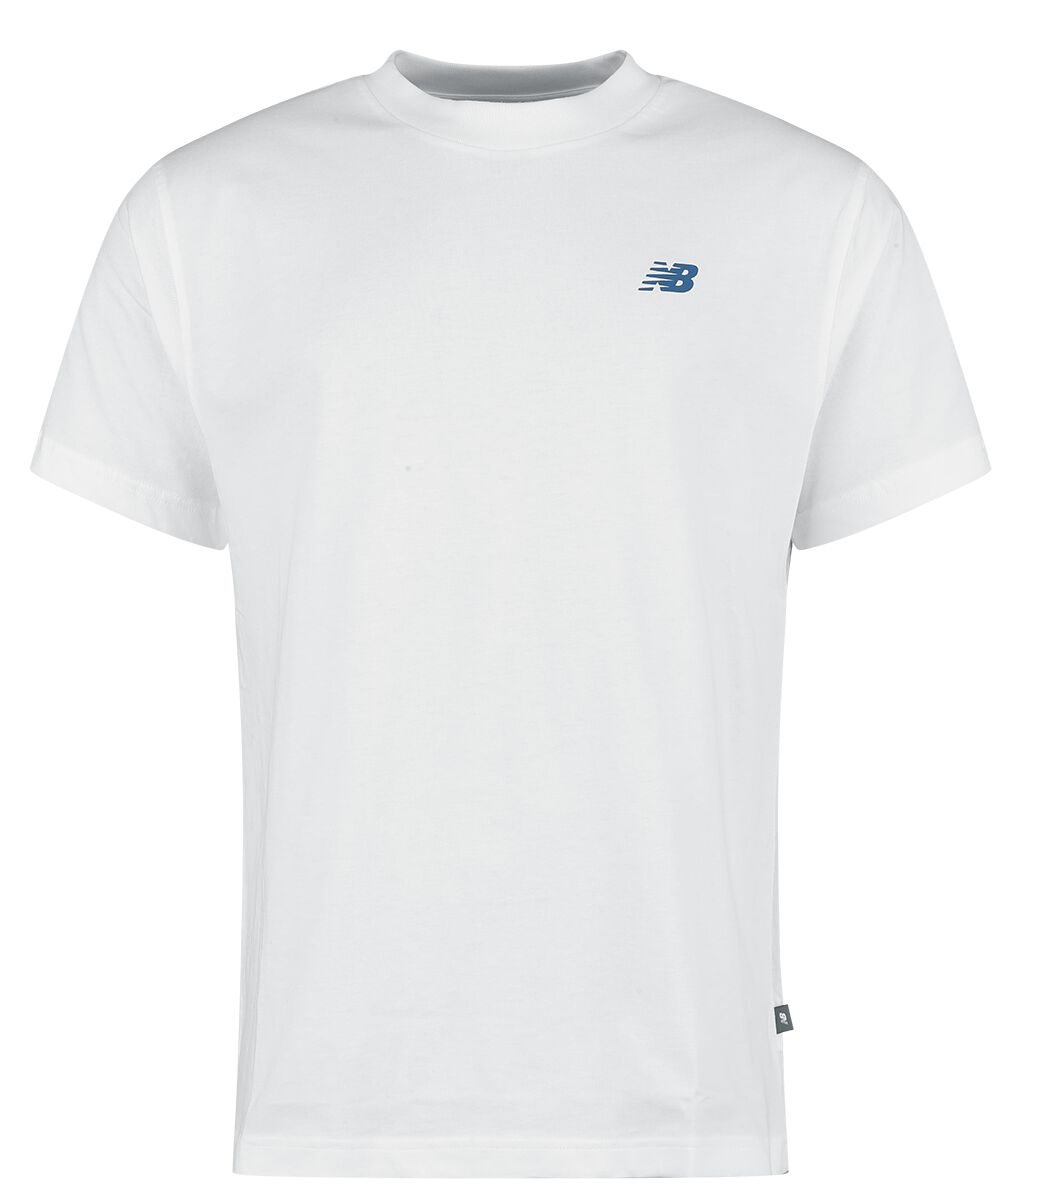 New Balance T-Shirt - Runners Tee - S bis XXL - für Männer - Größe XXL - weiß